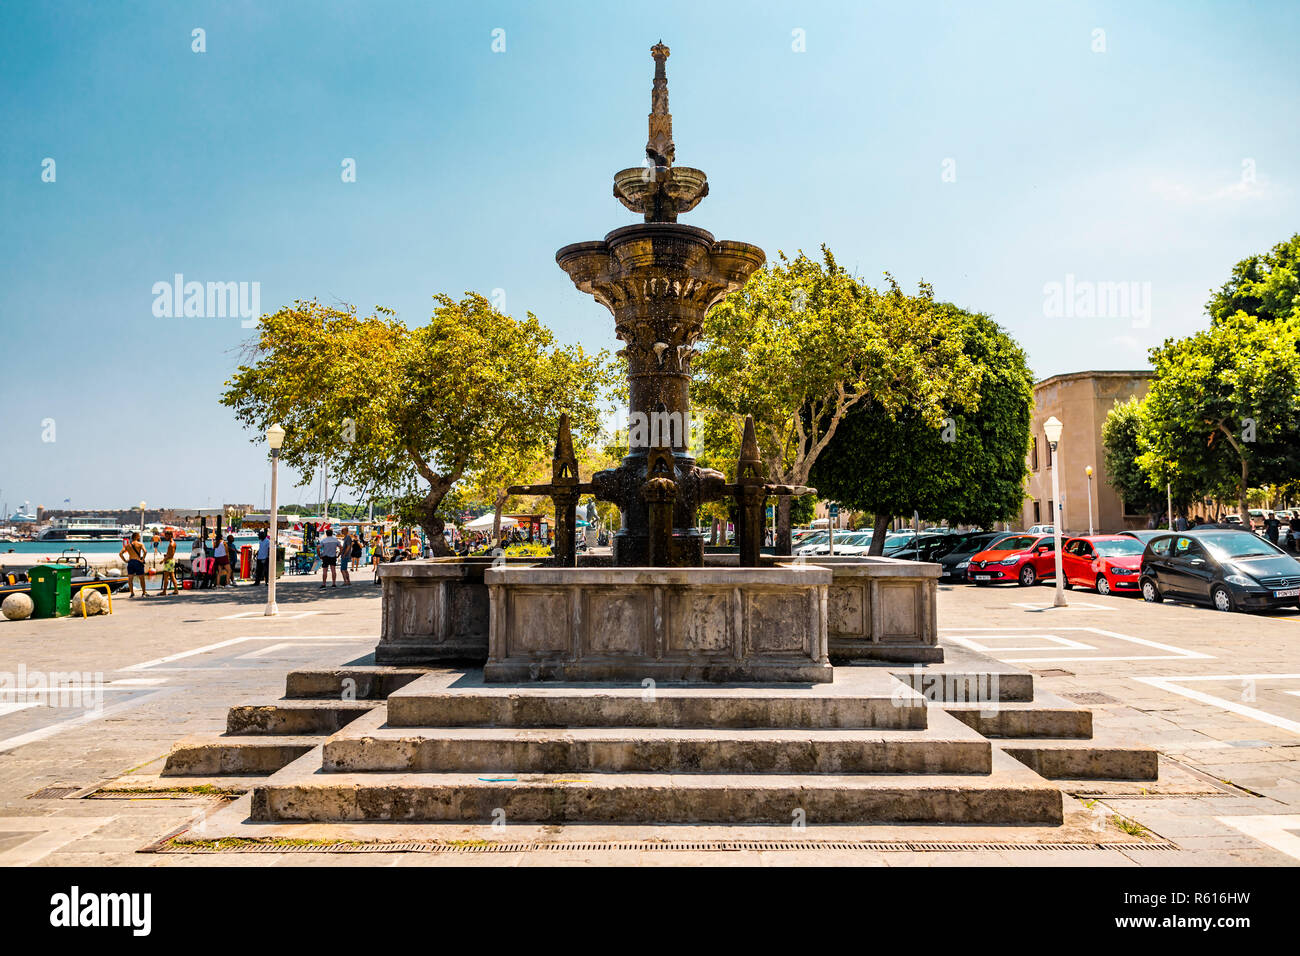 Rhodes, Grèce - Août 4, 2018 : la fontaine historique Monument Alexandros Diakos sur une place dans le port de Rhodes en Grèce. Banque D'Images